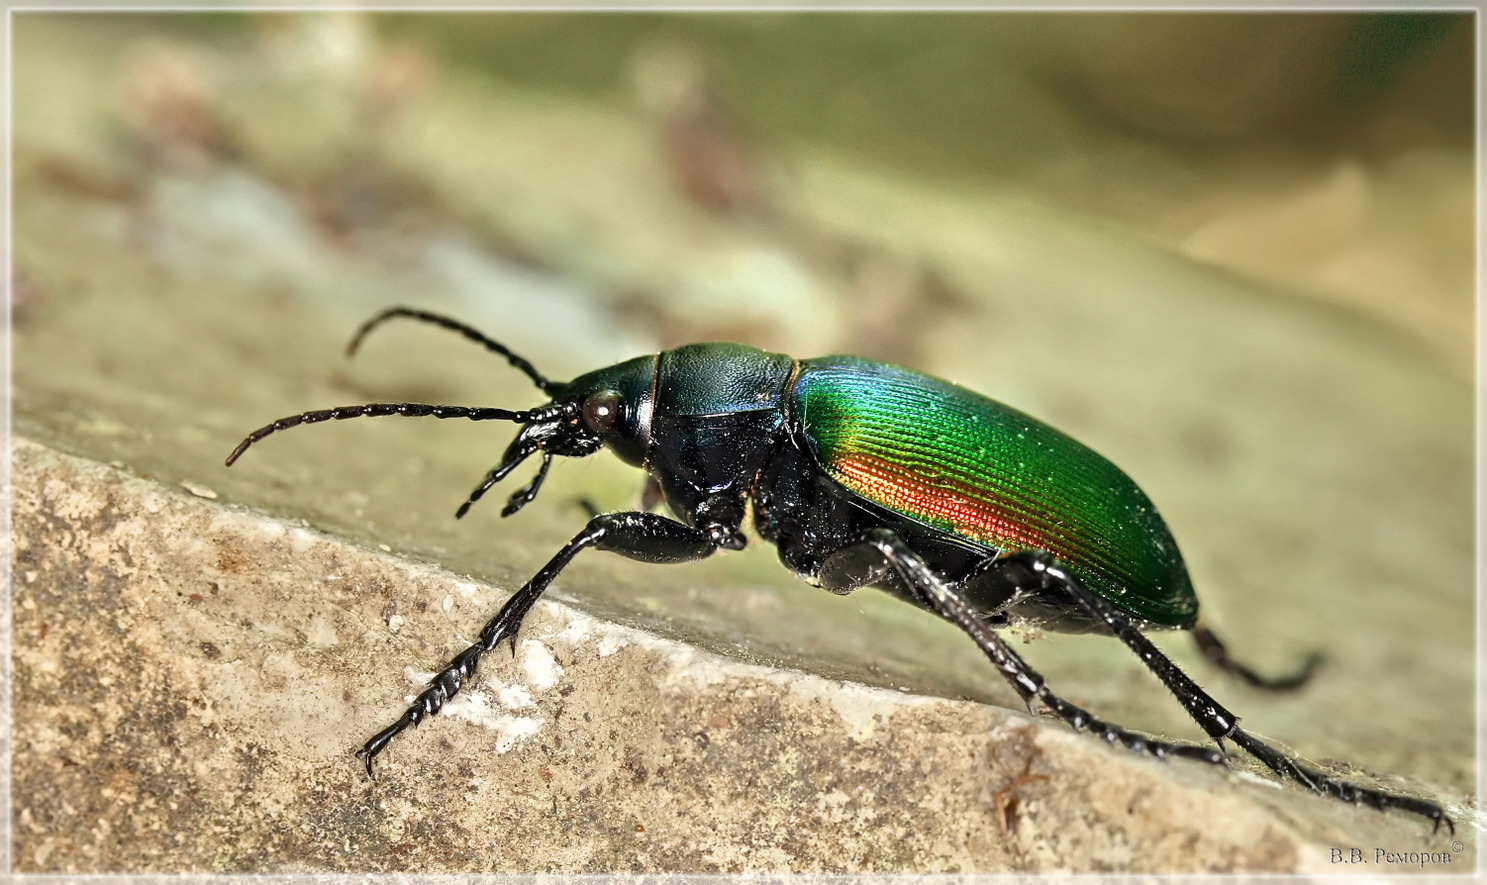 Красотел пахучий: фото жука, причины исчезновения